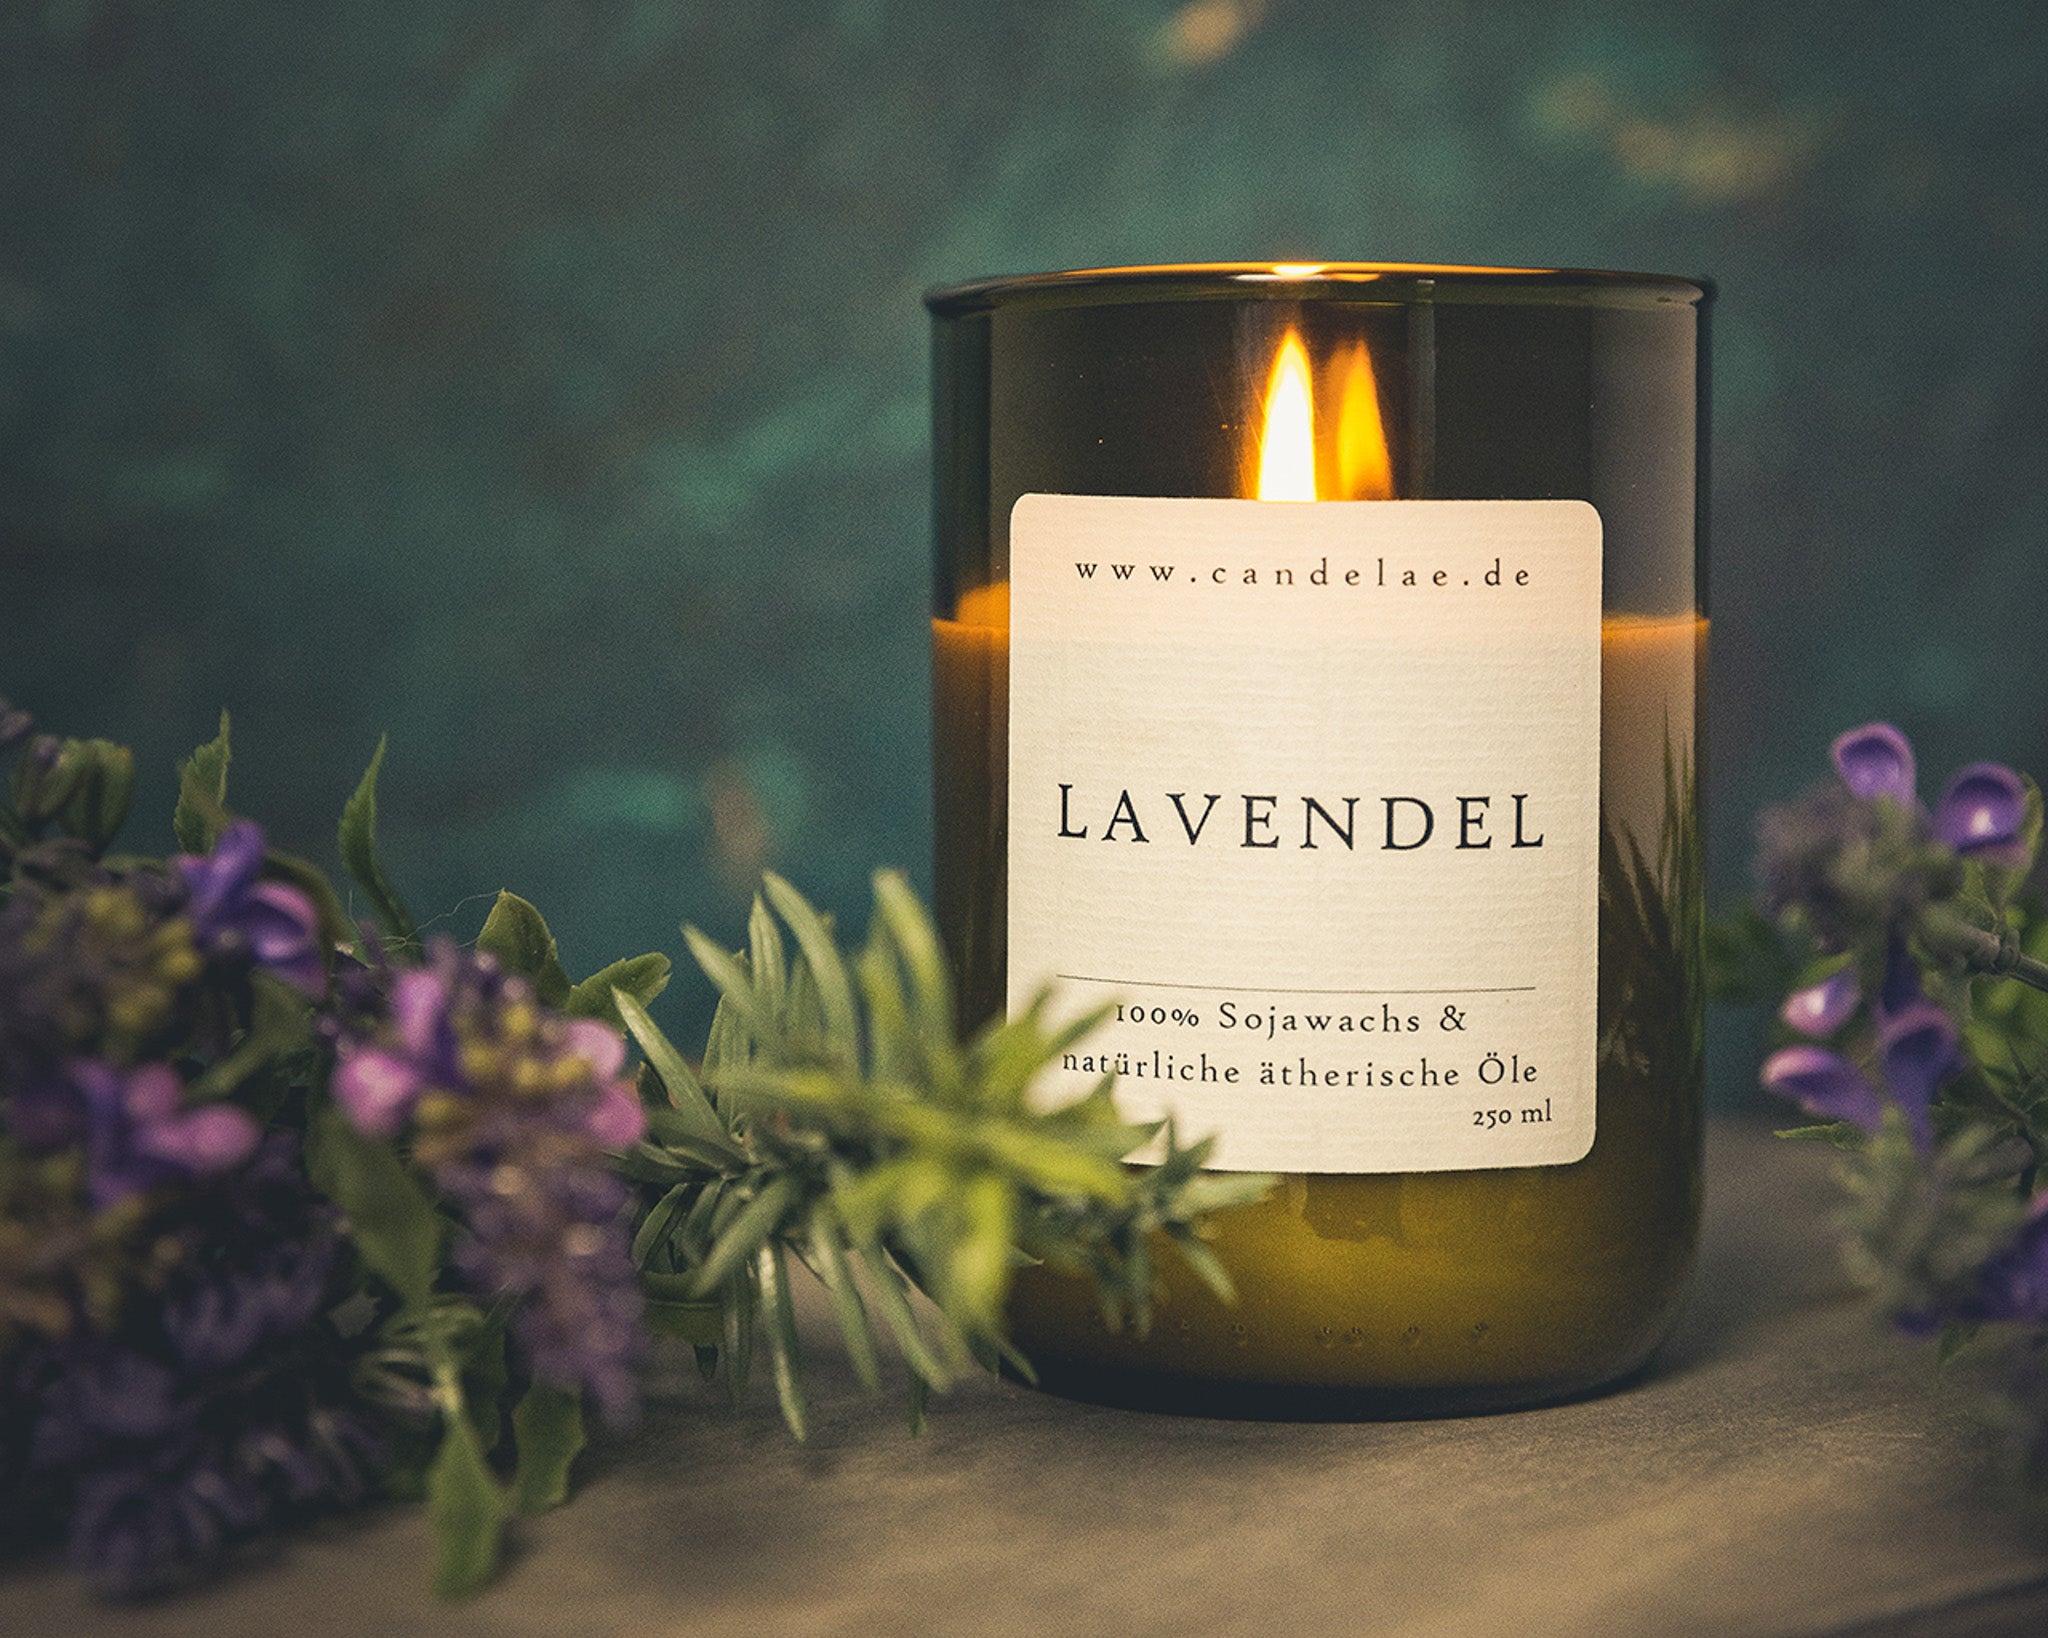 Lavendel – der Klassiker unter den ätherischen Ölen